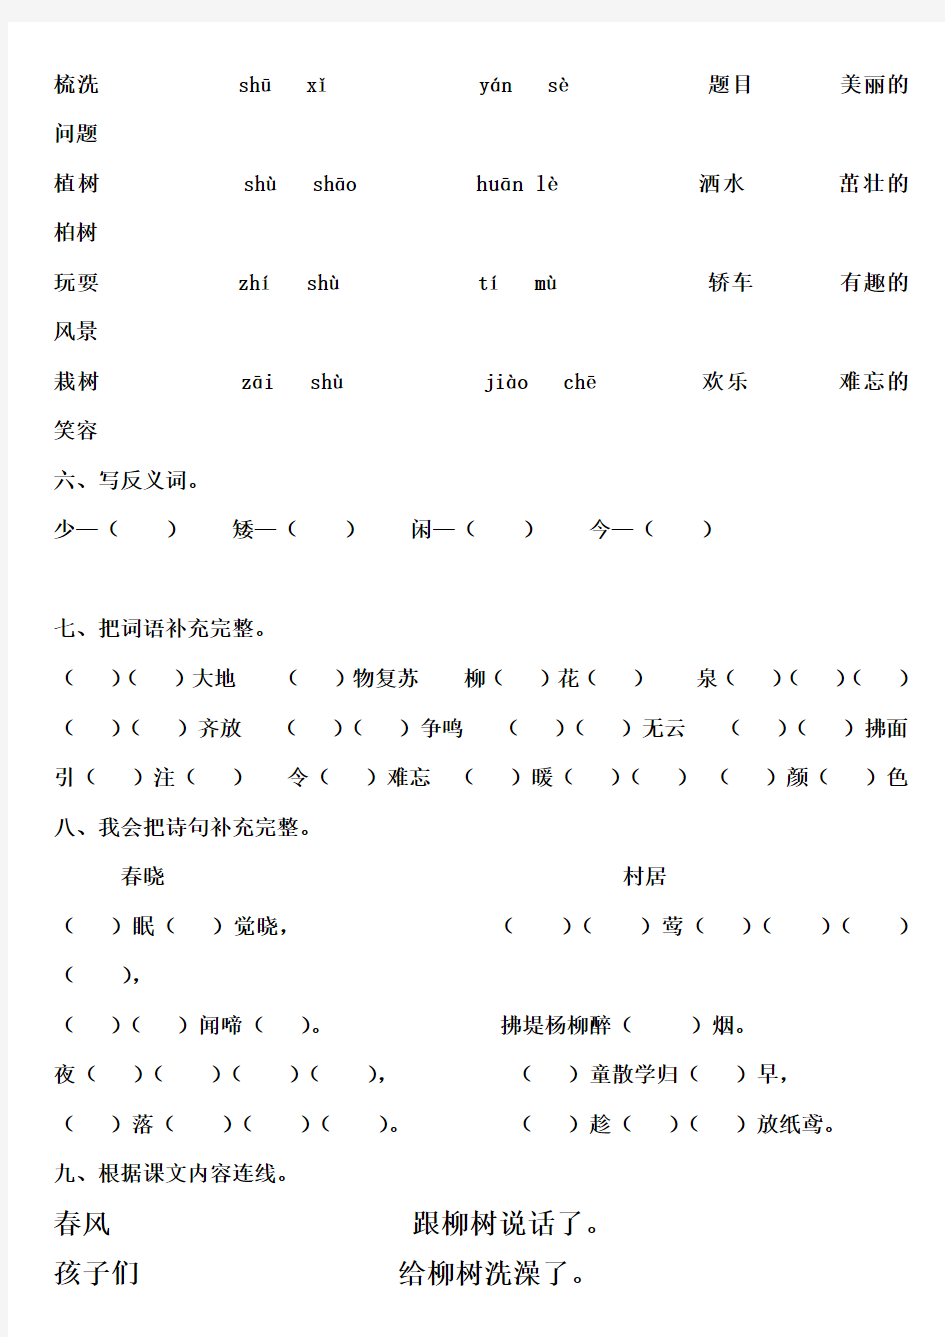 强烈推荐人教版一年级语文下册1—8 单元练习题(最全)